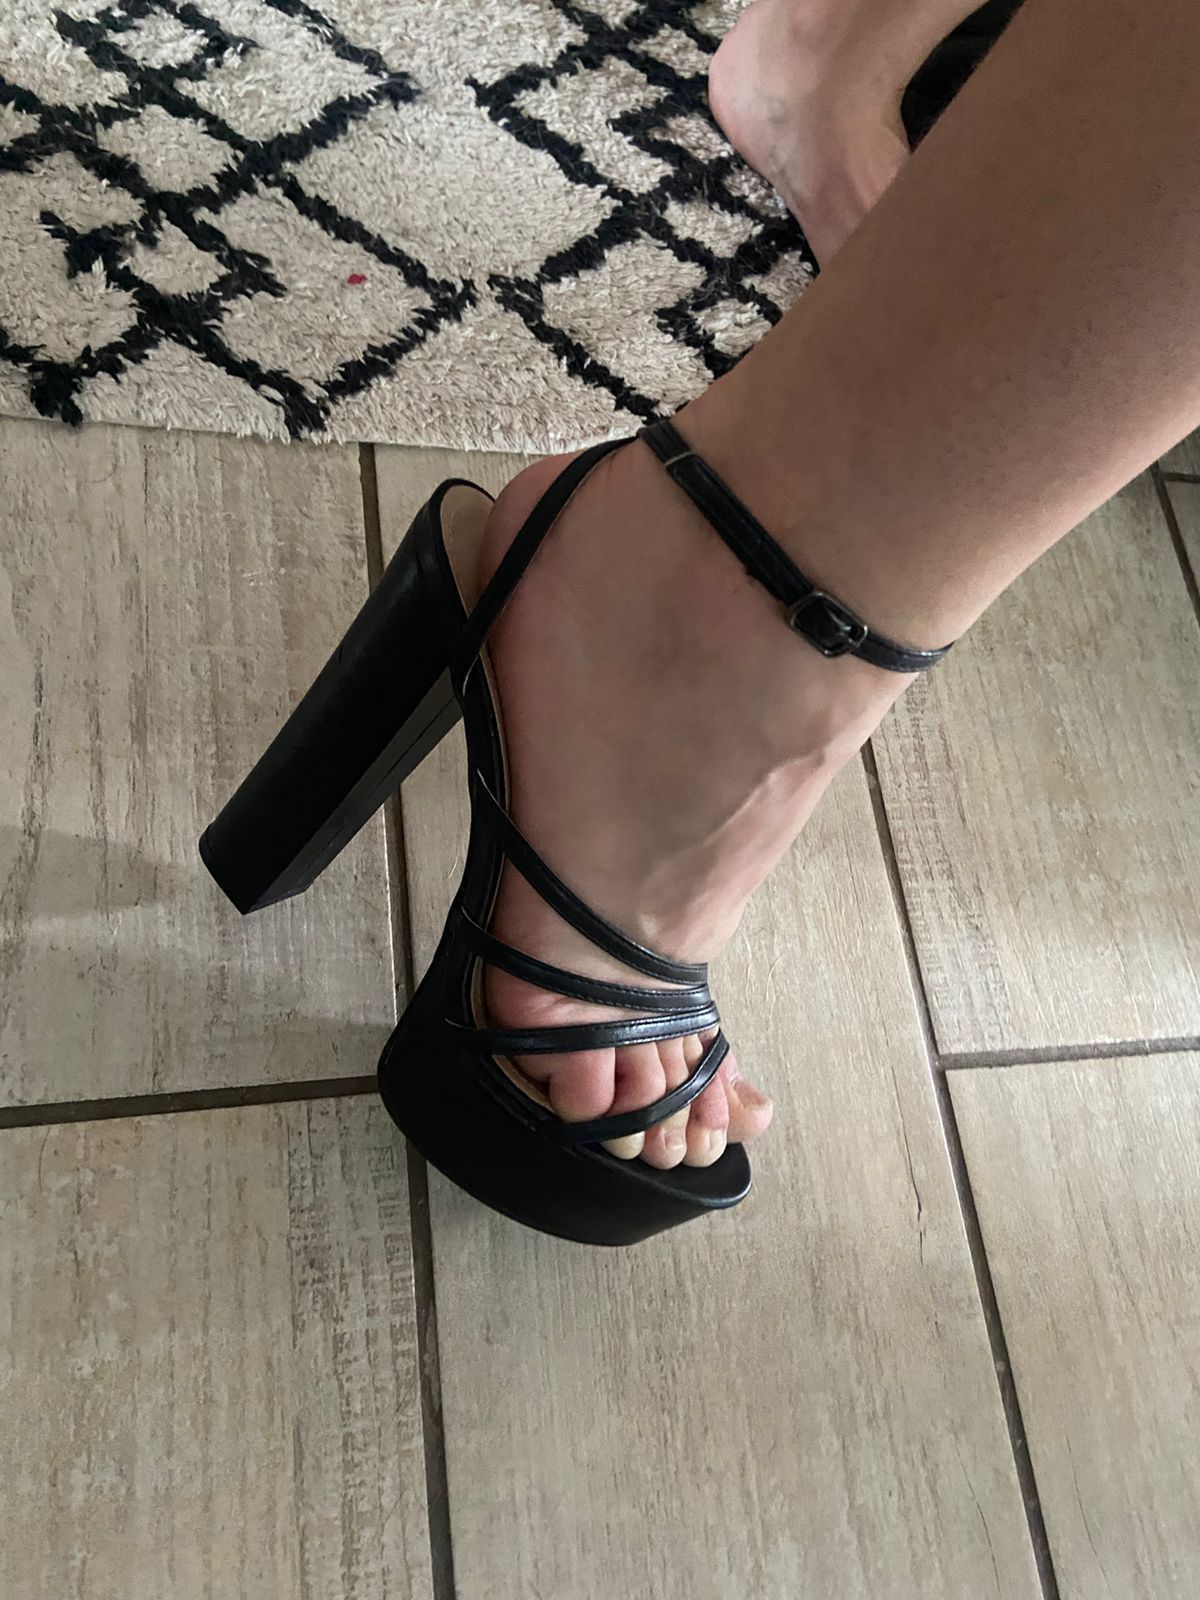 Ladies KG Black Strappy Platform Heels, Size UK6, BNIB | eBay